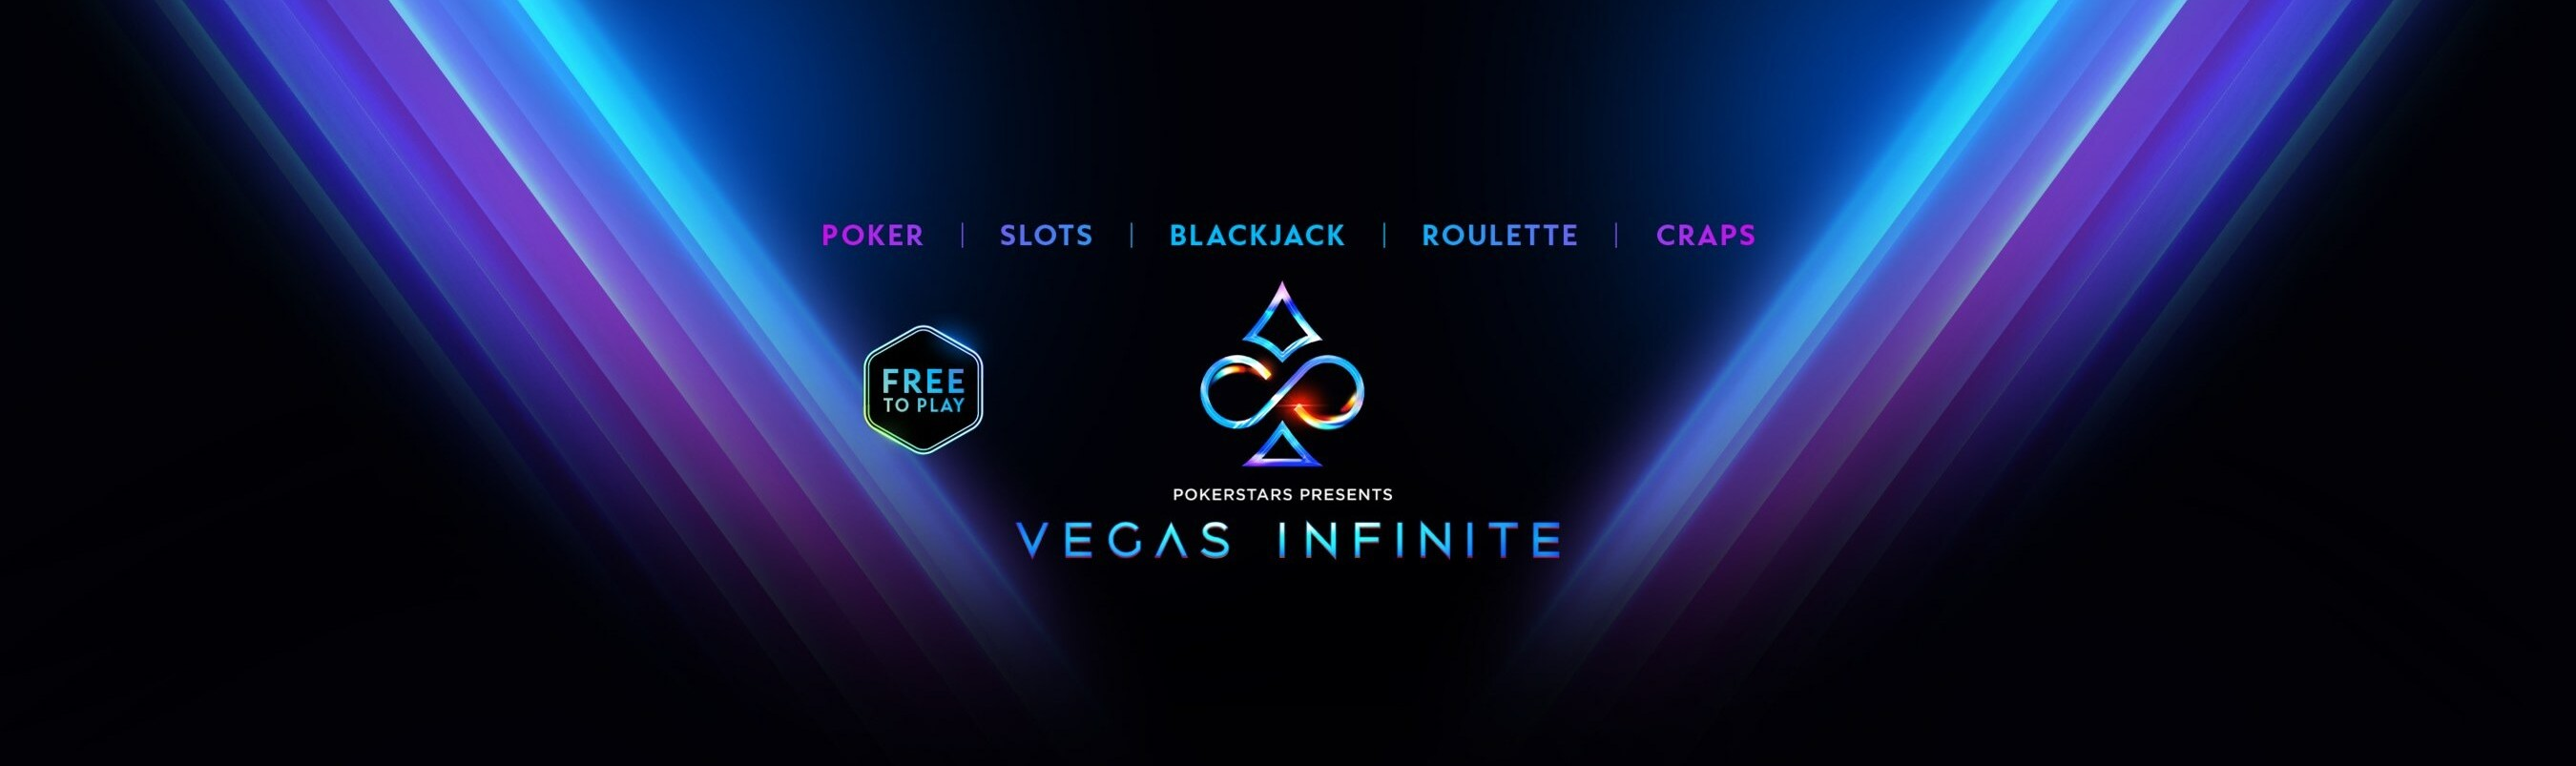 Welcome to Vegas Infinite